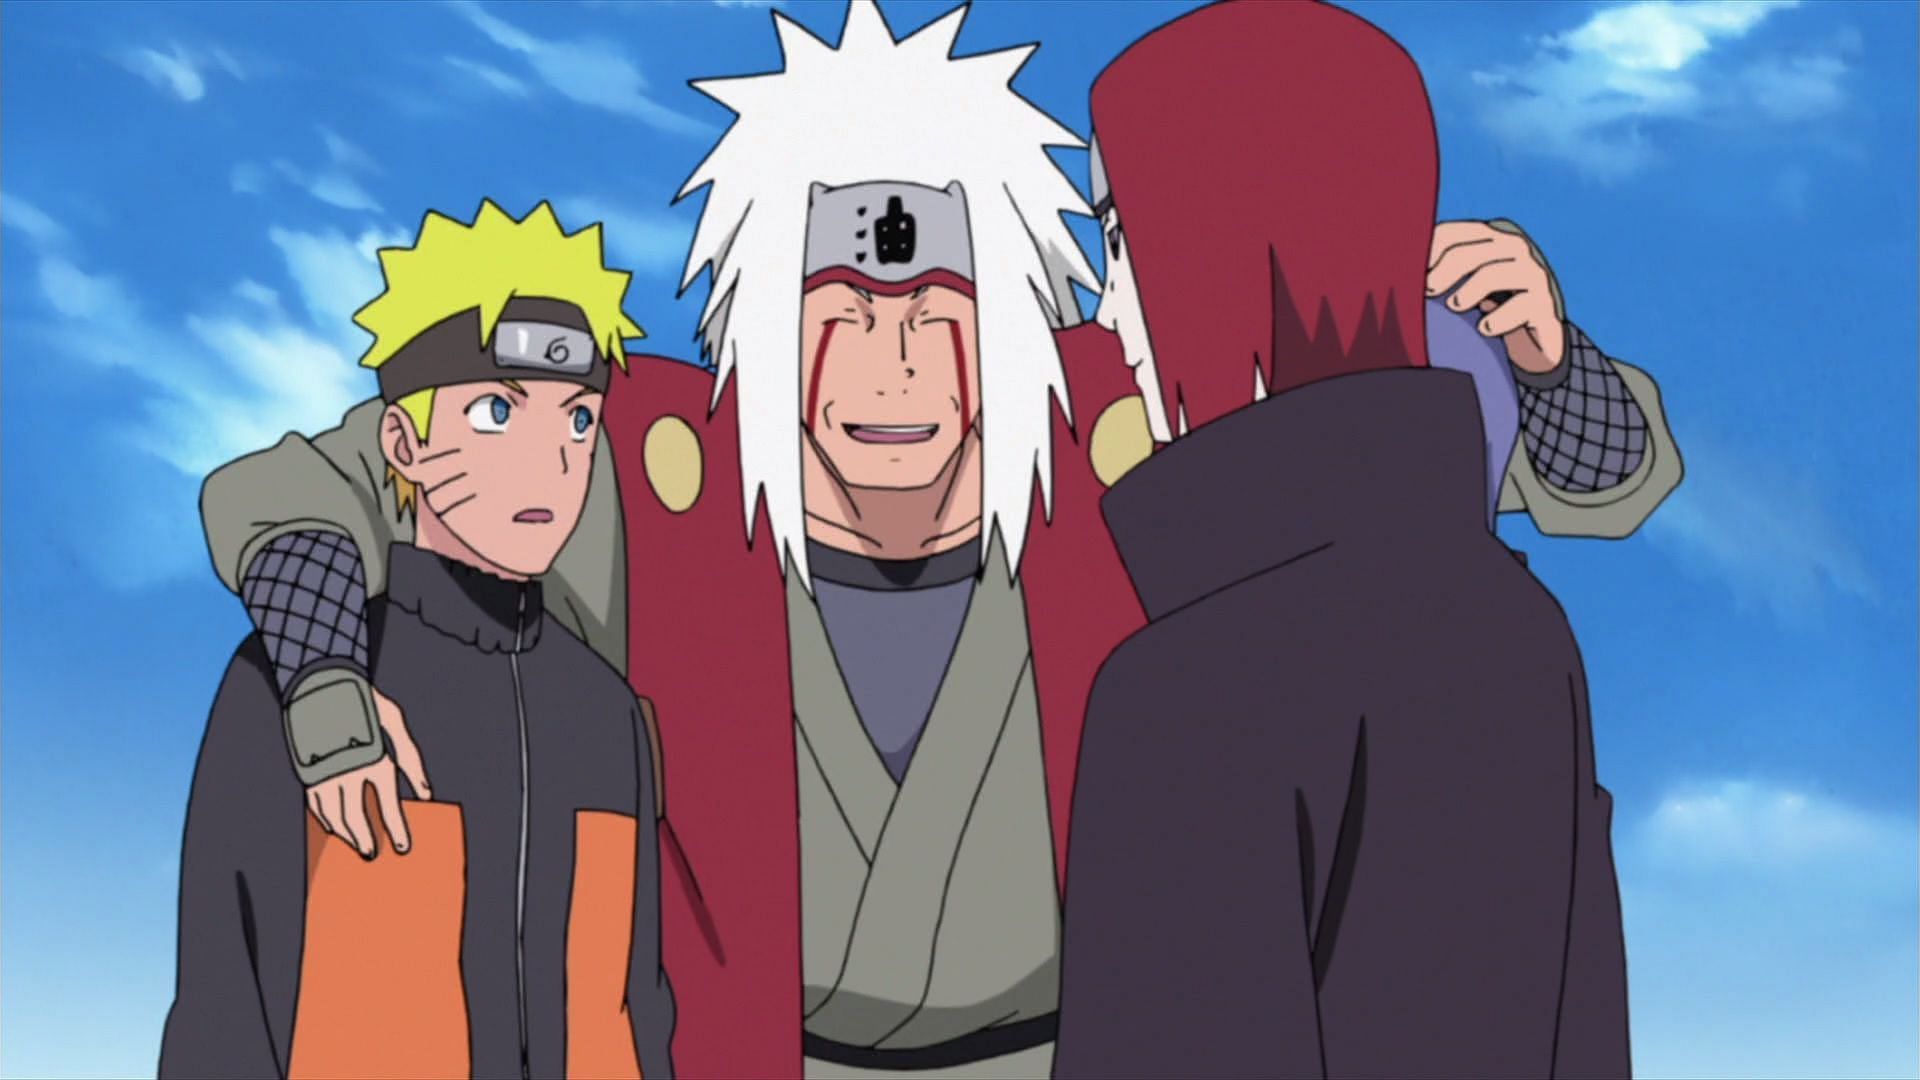 Jiraiya, Naruto, and Nagato (Image via Studio Pierrot)